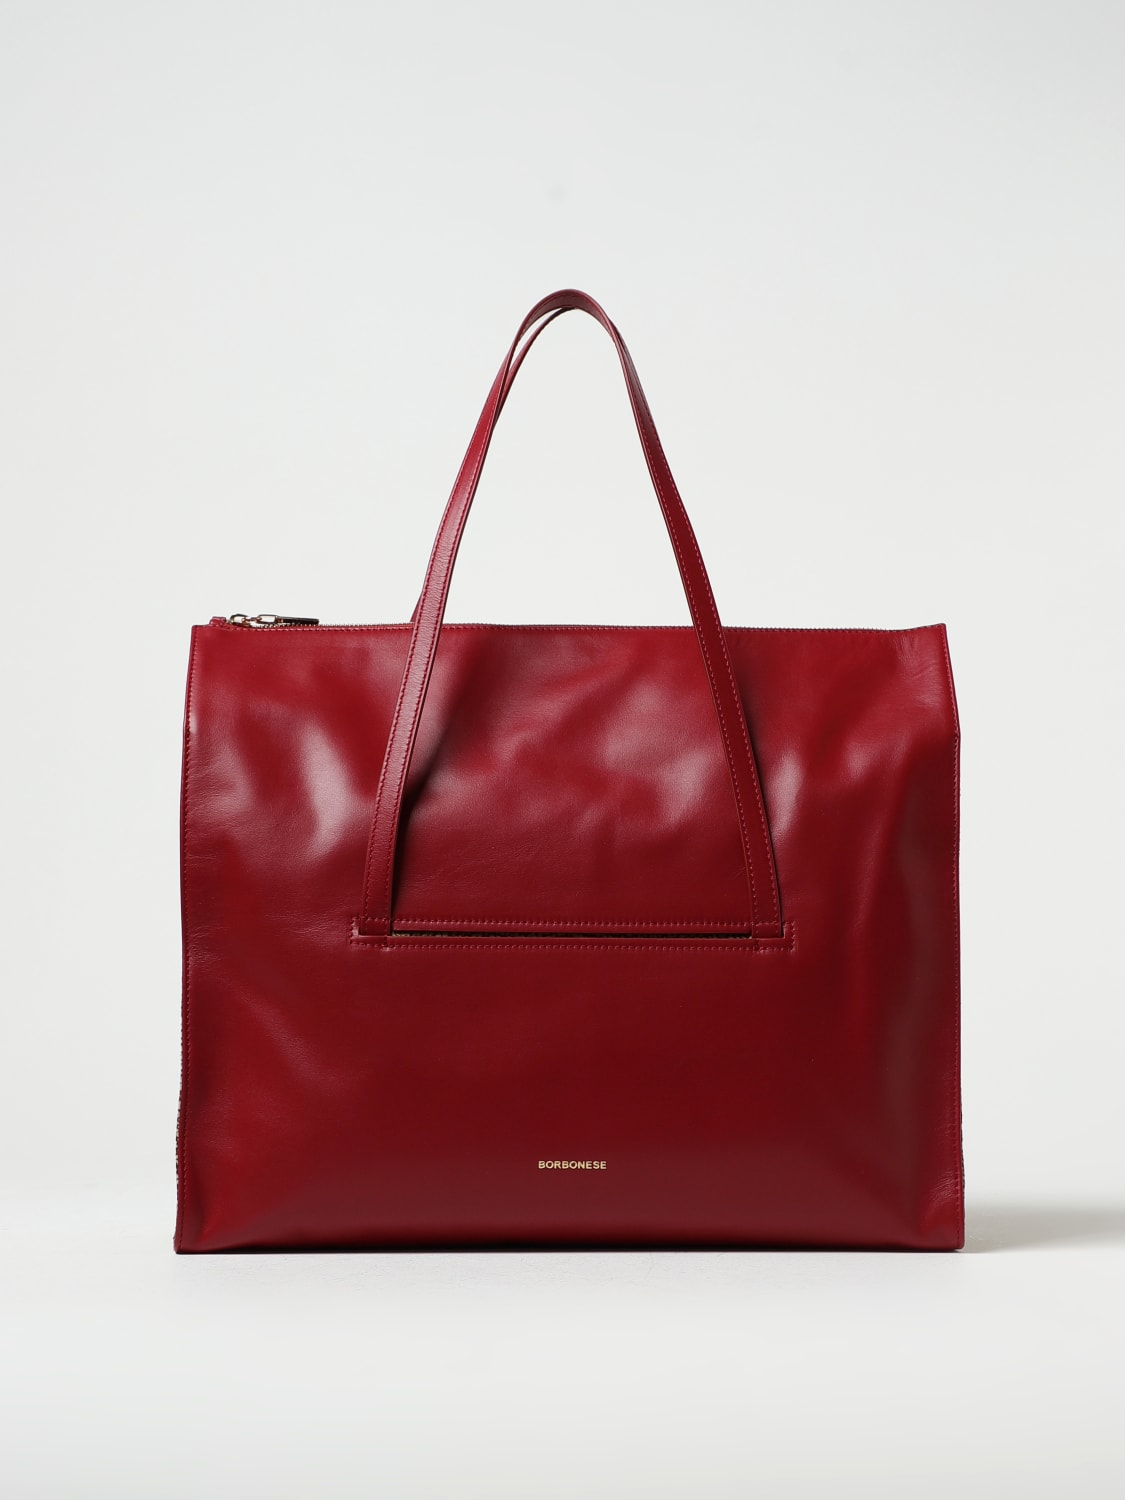 Women's Bags - Buy Bags Online for Women